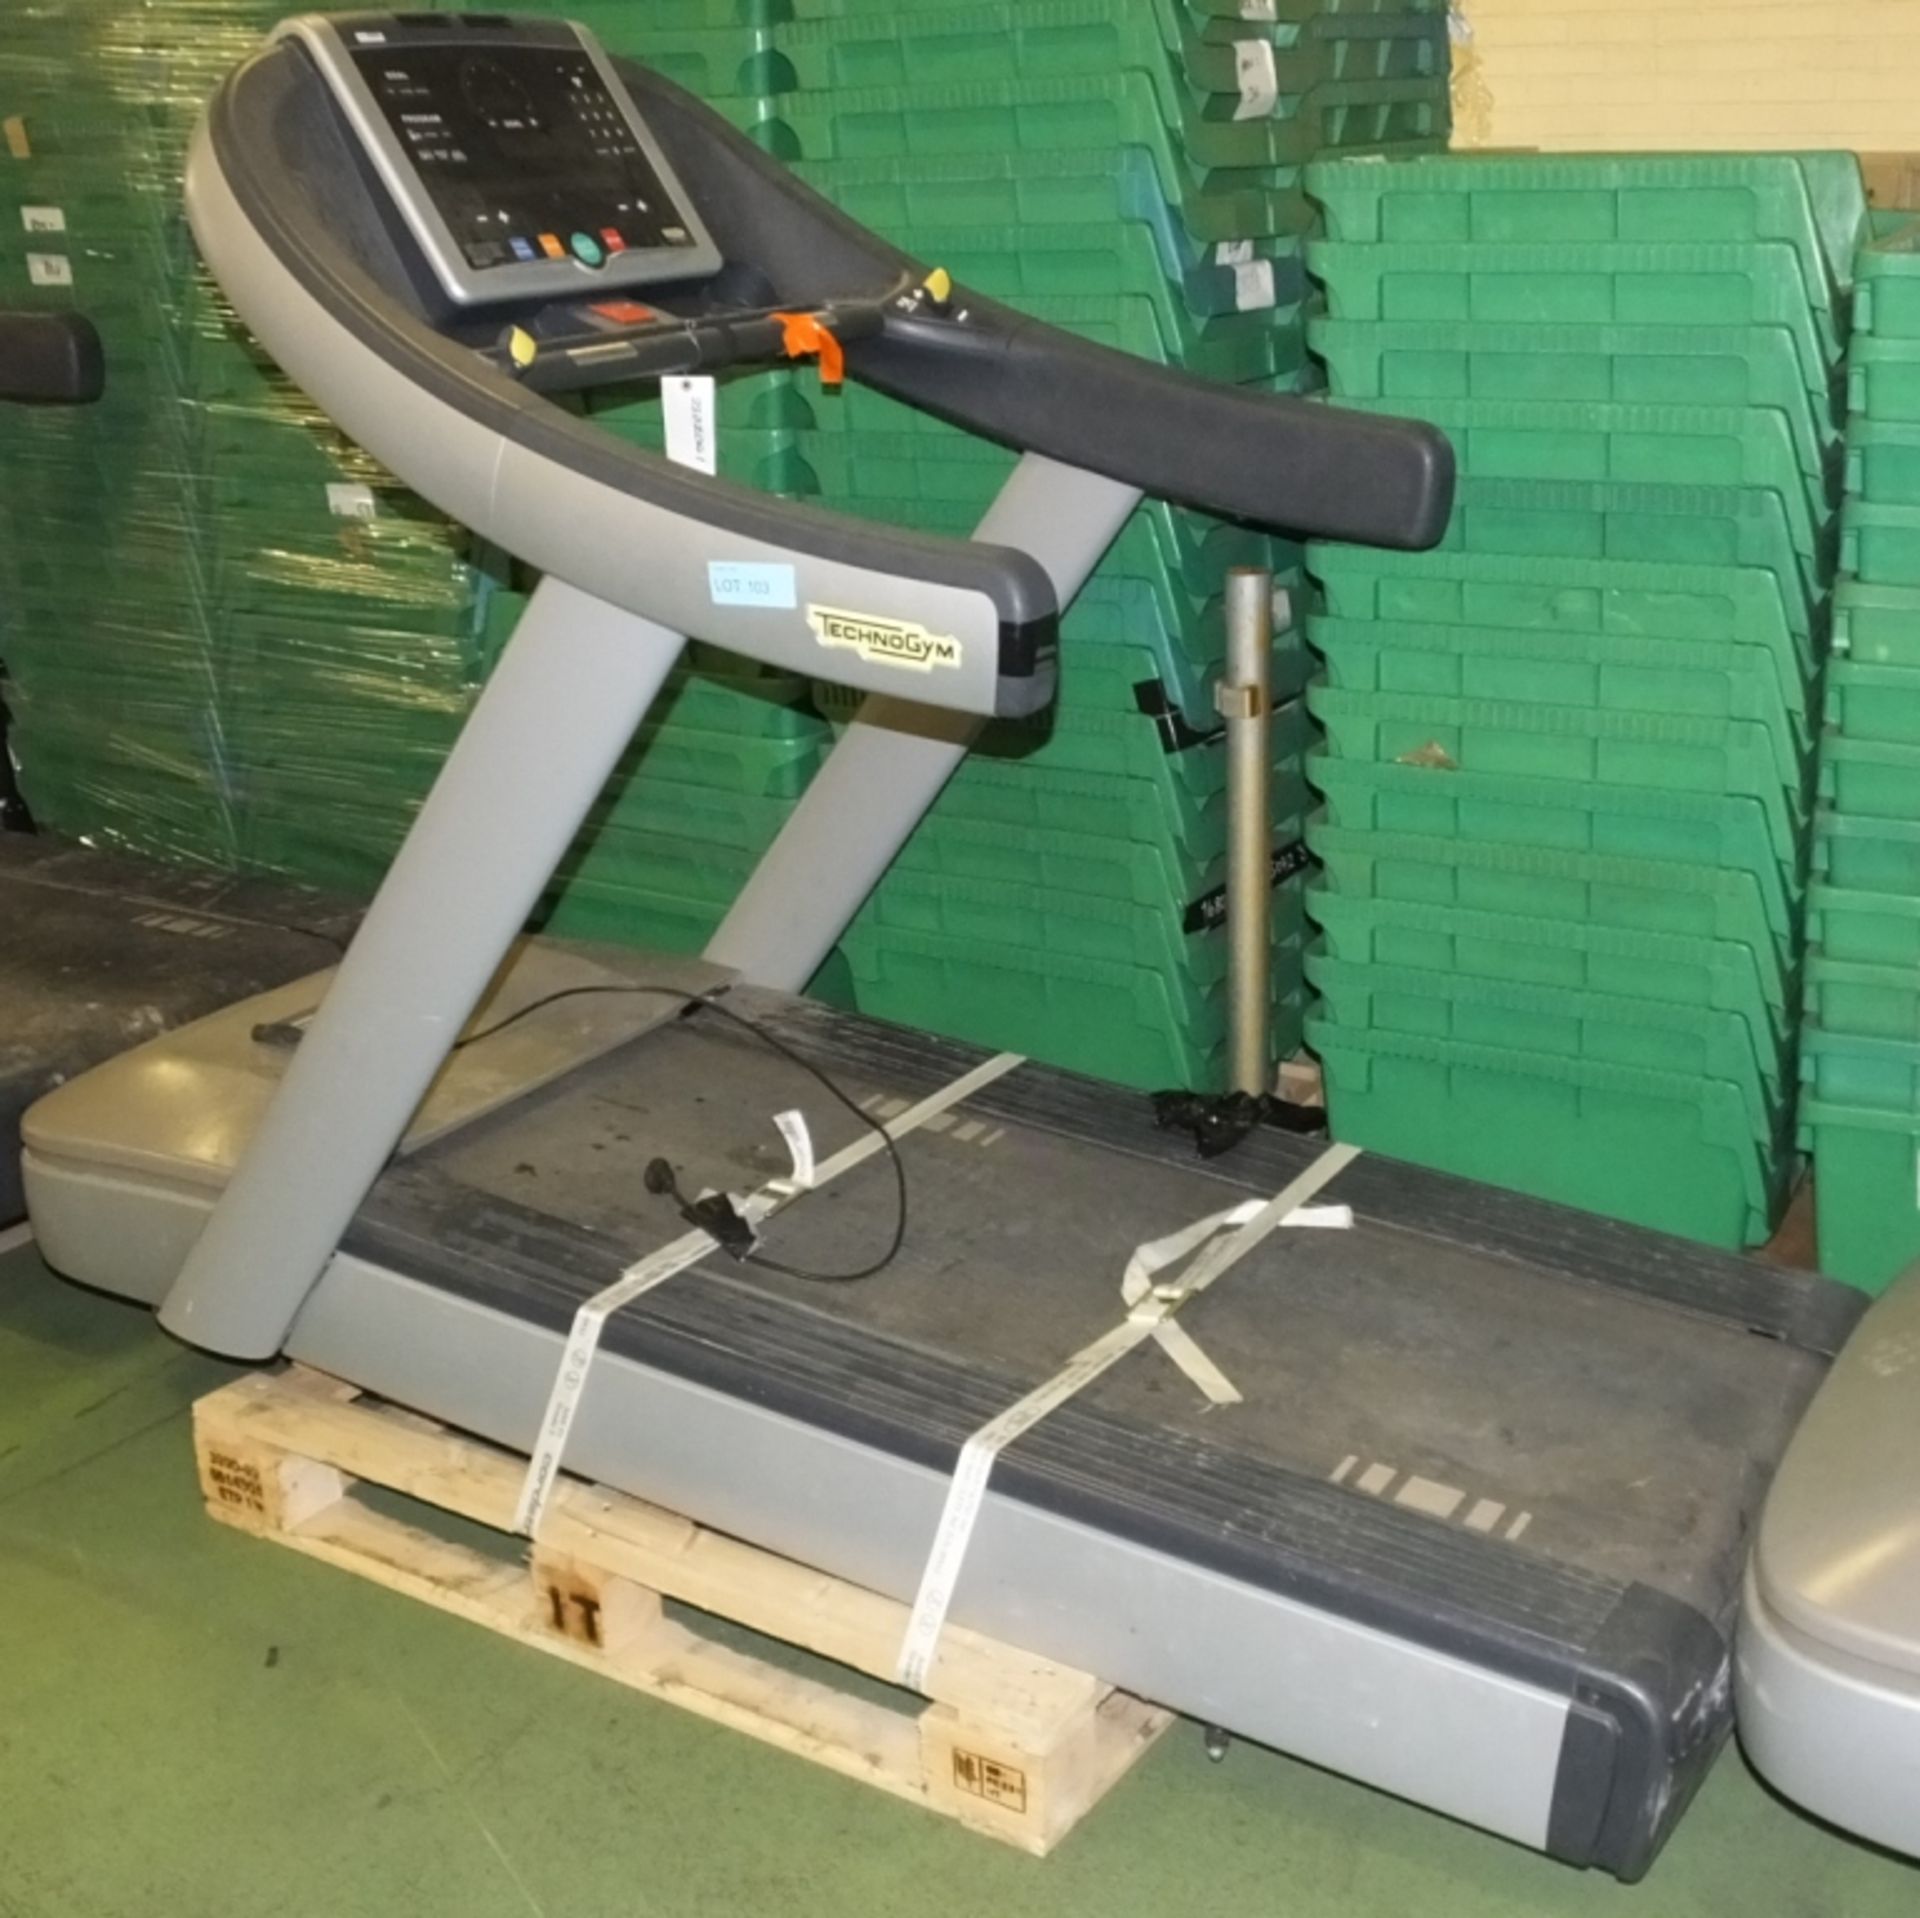 TechnoGym Treadmill